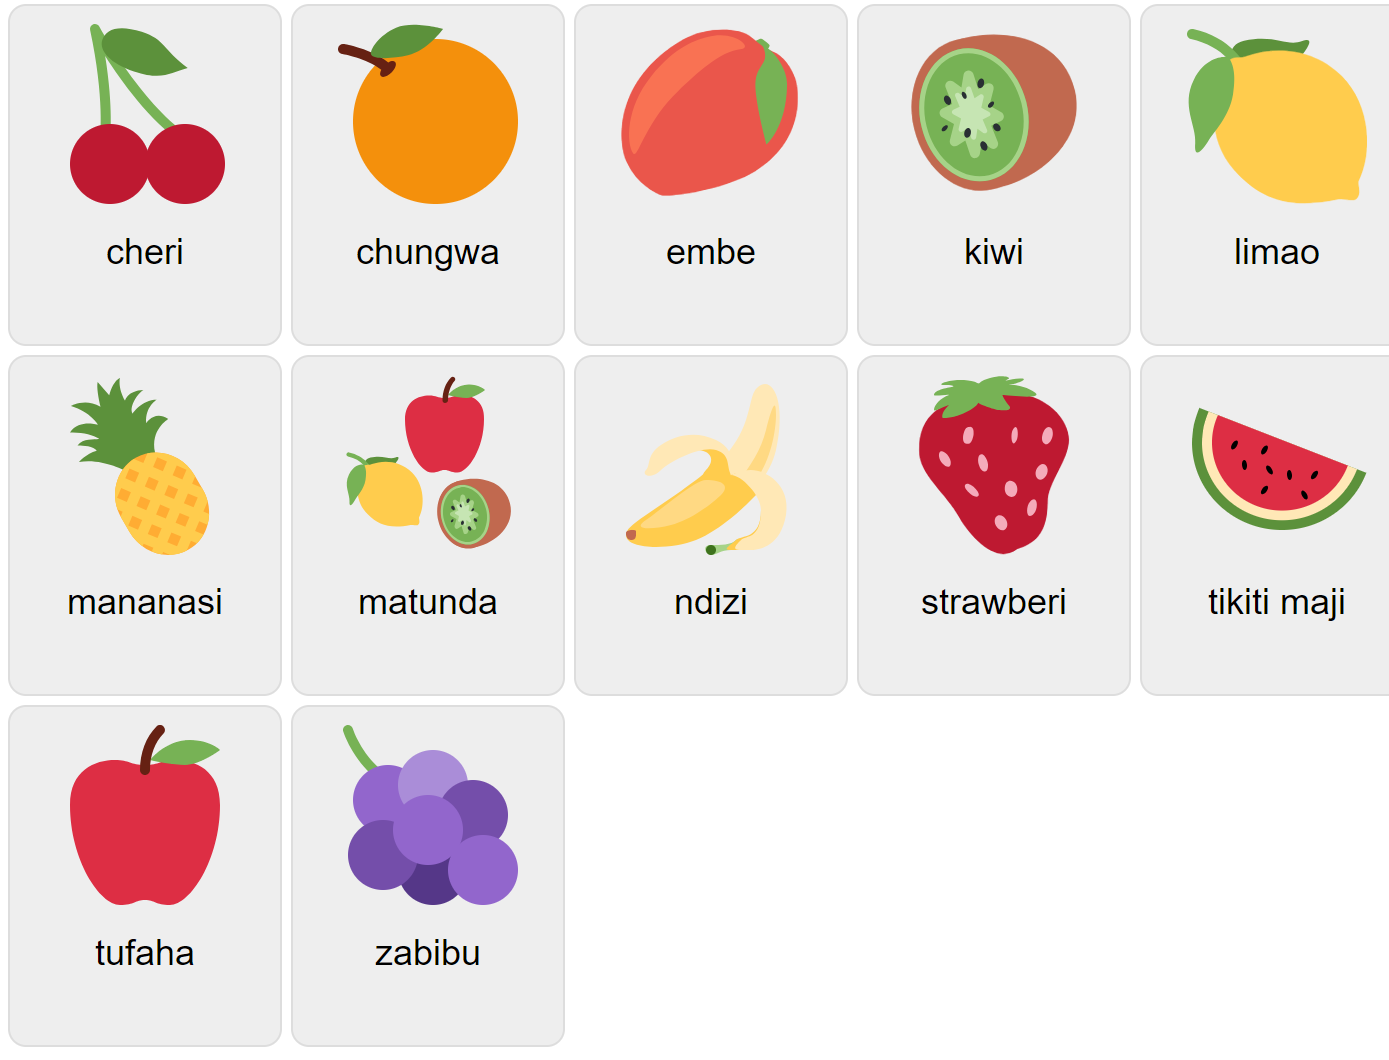 Fruits in Swahili